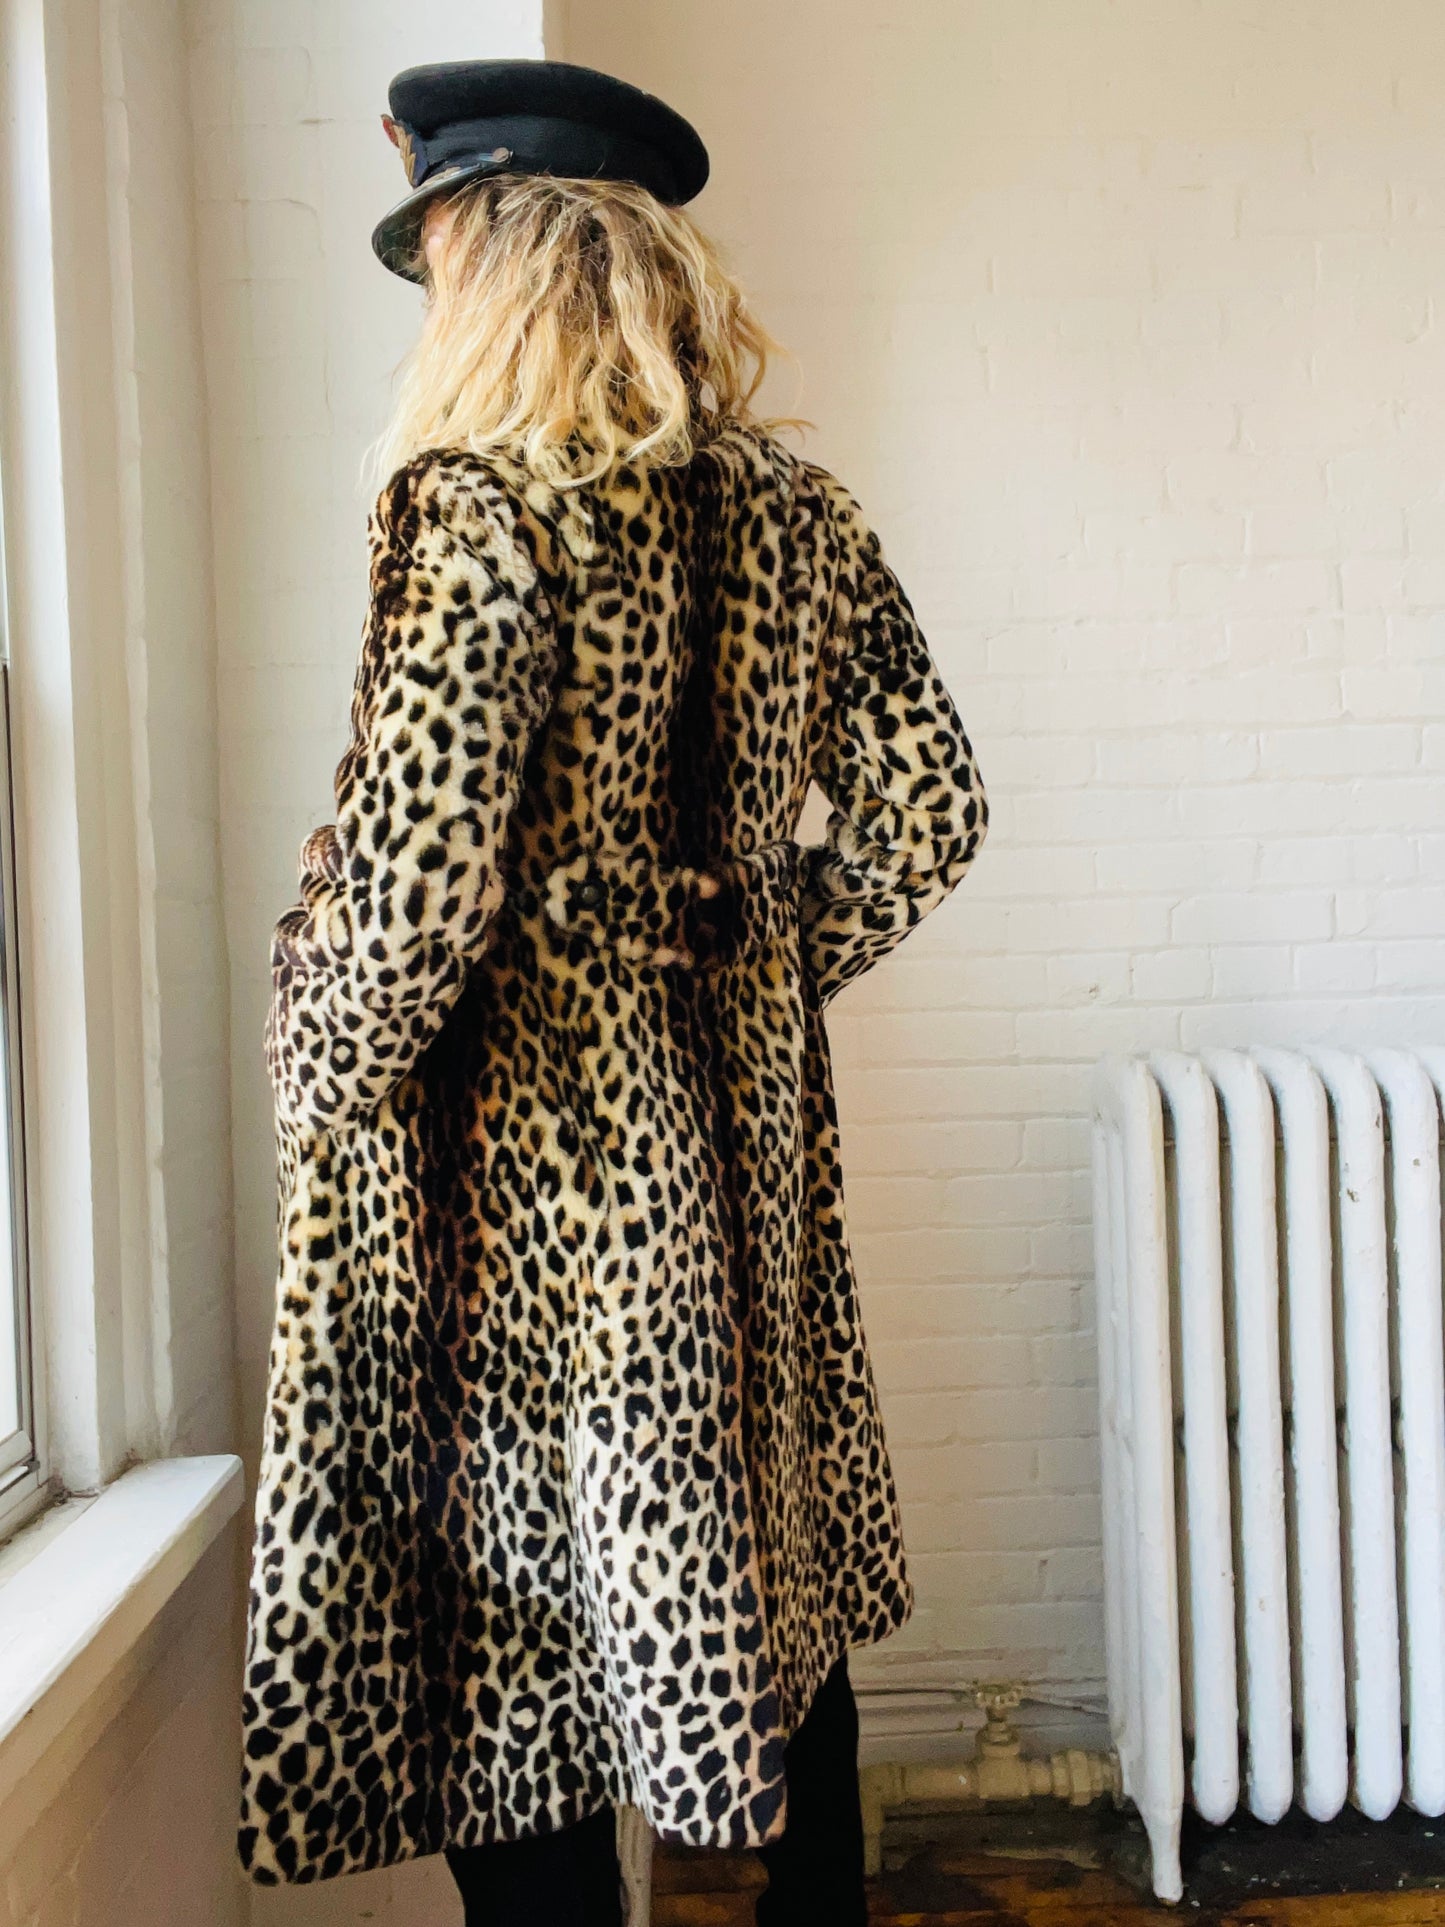 1970s Leopard Evening Coat Medium/Large